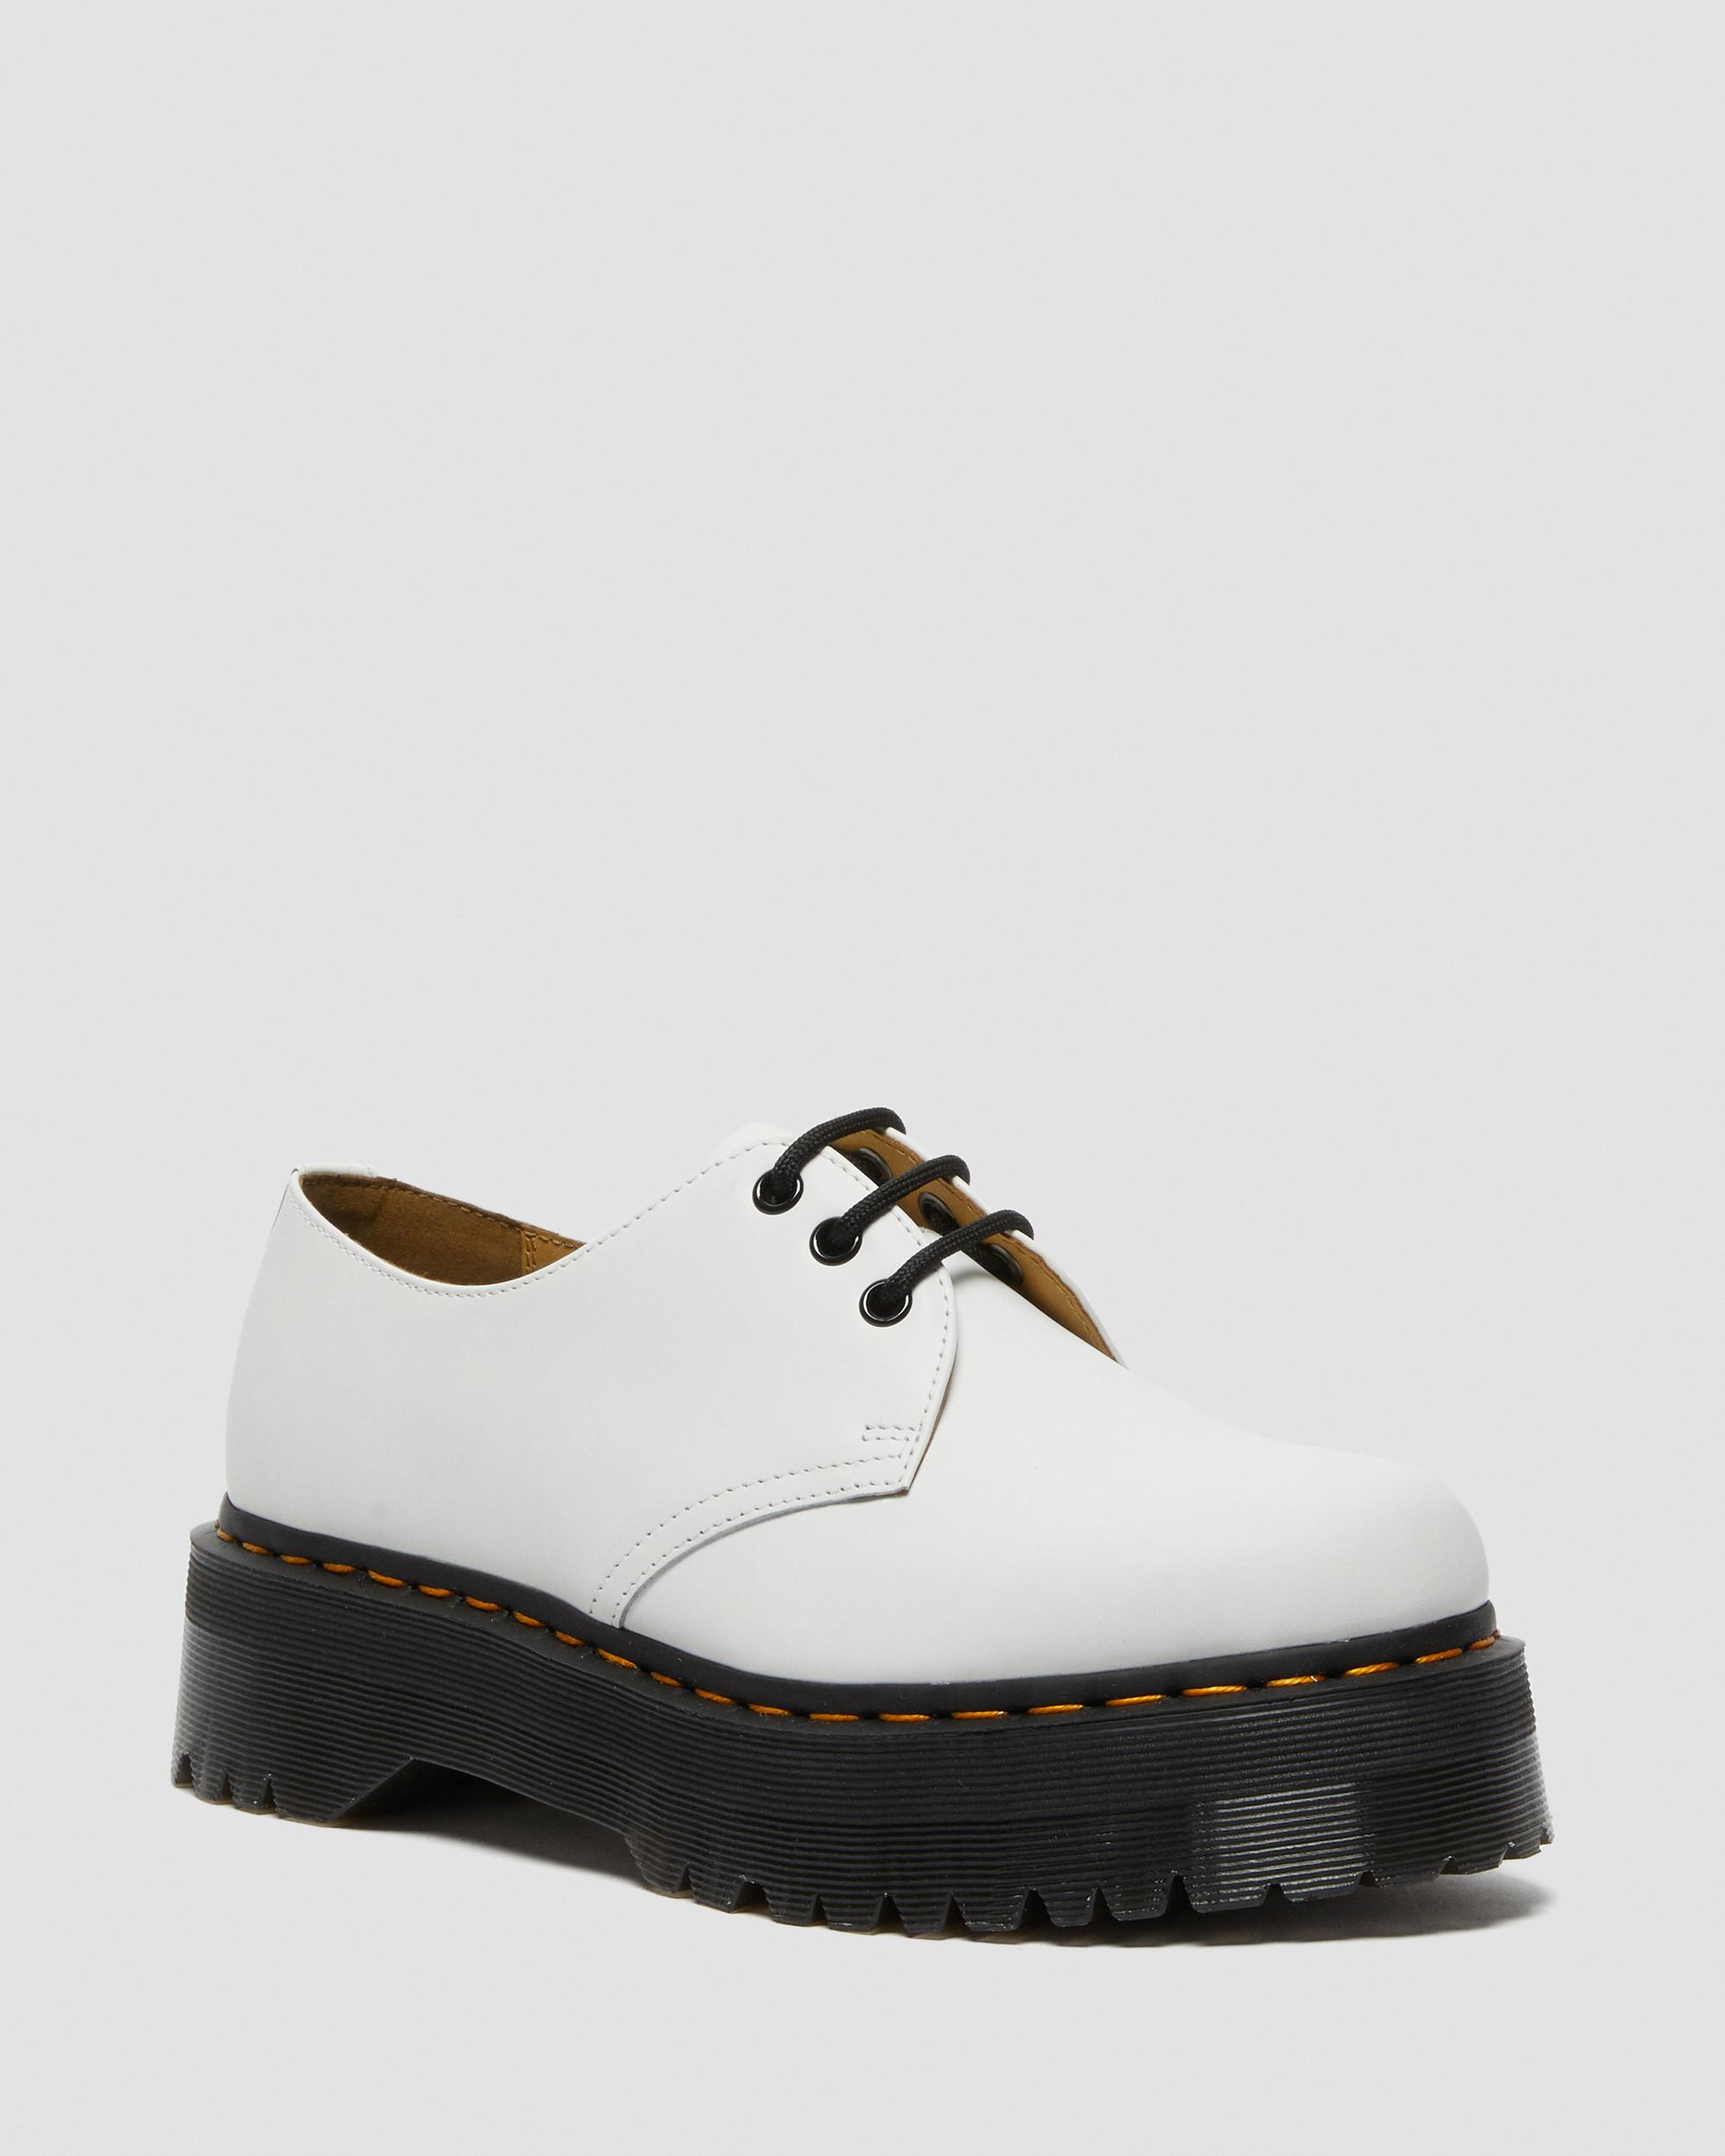 1461 Smooth Leather Platform Shoes in Black | Dr. Martens